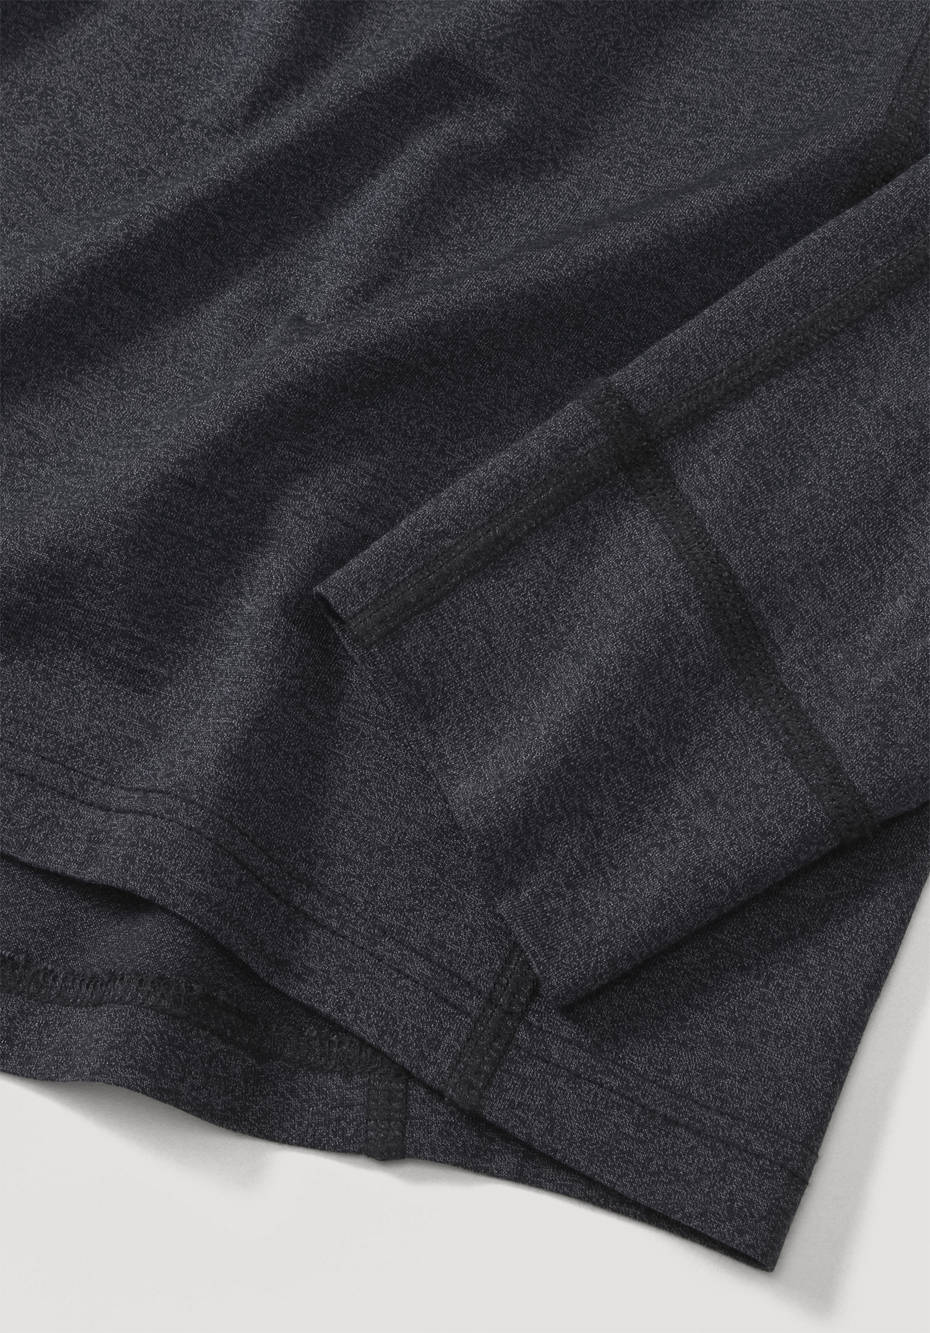 Functional shirt made of organic merino wool with silk